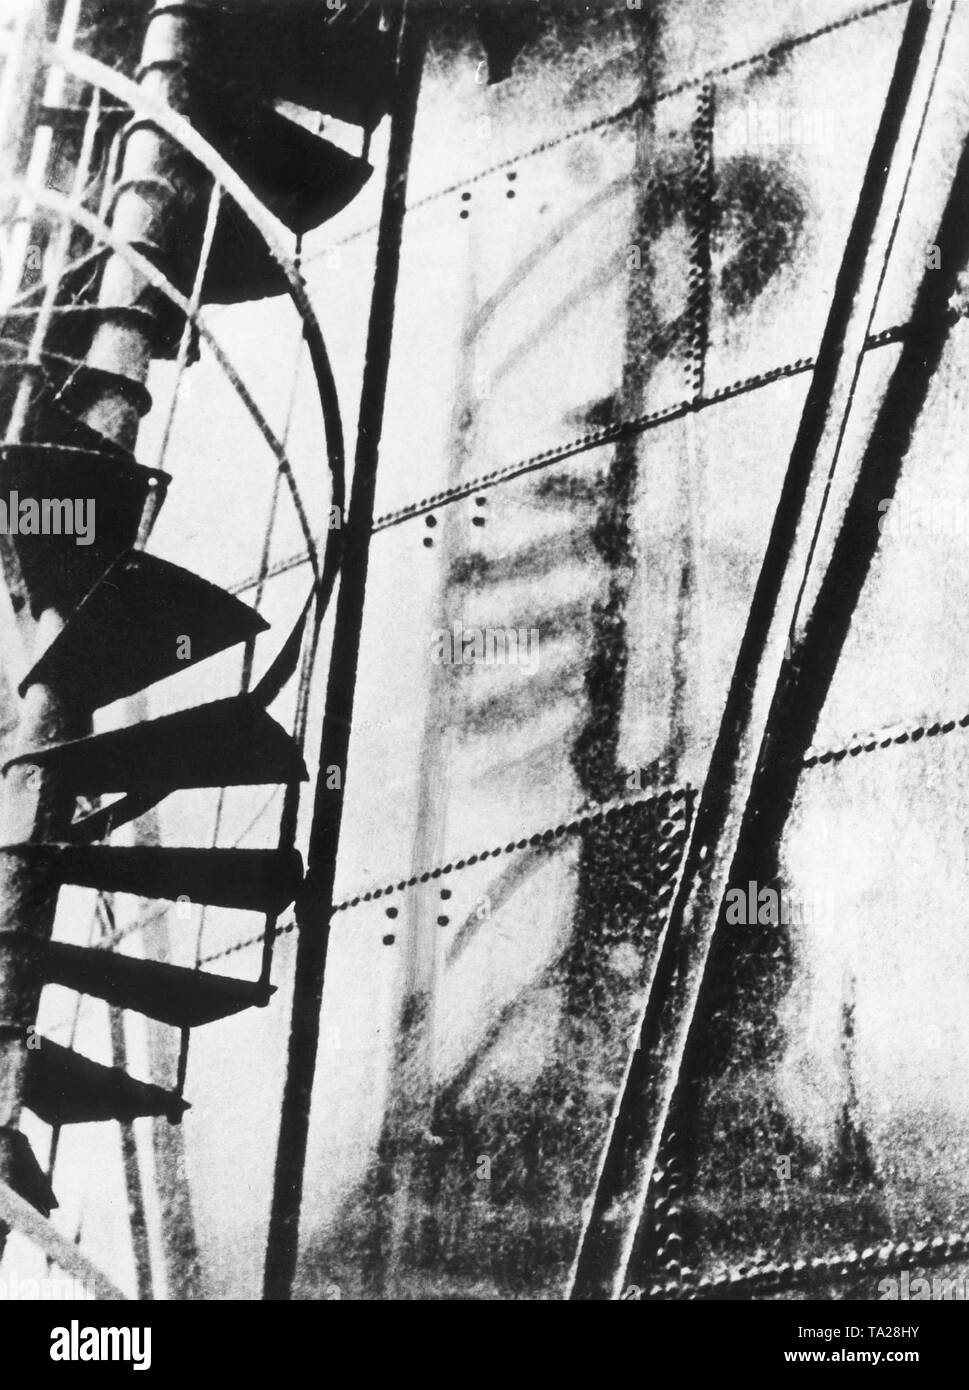 Der Blitz der die Atombombe Explosion hat der Schatten einer Wendeltreppe in eine eiserne Wand links. Stockfoto